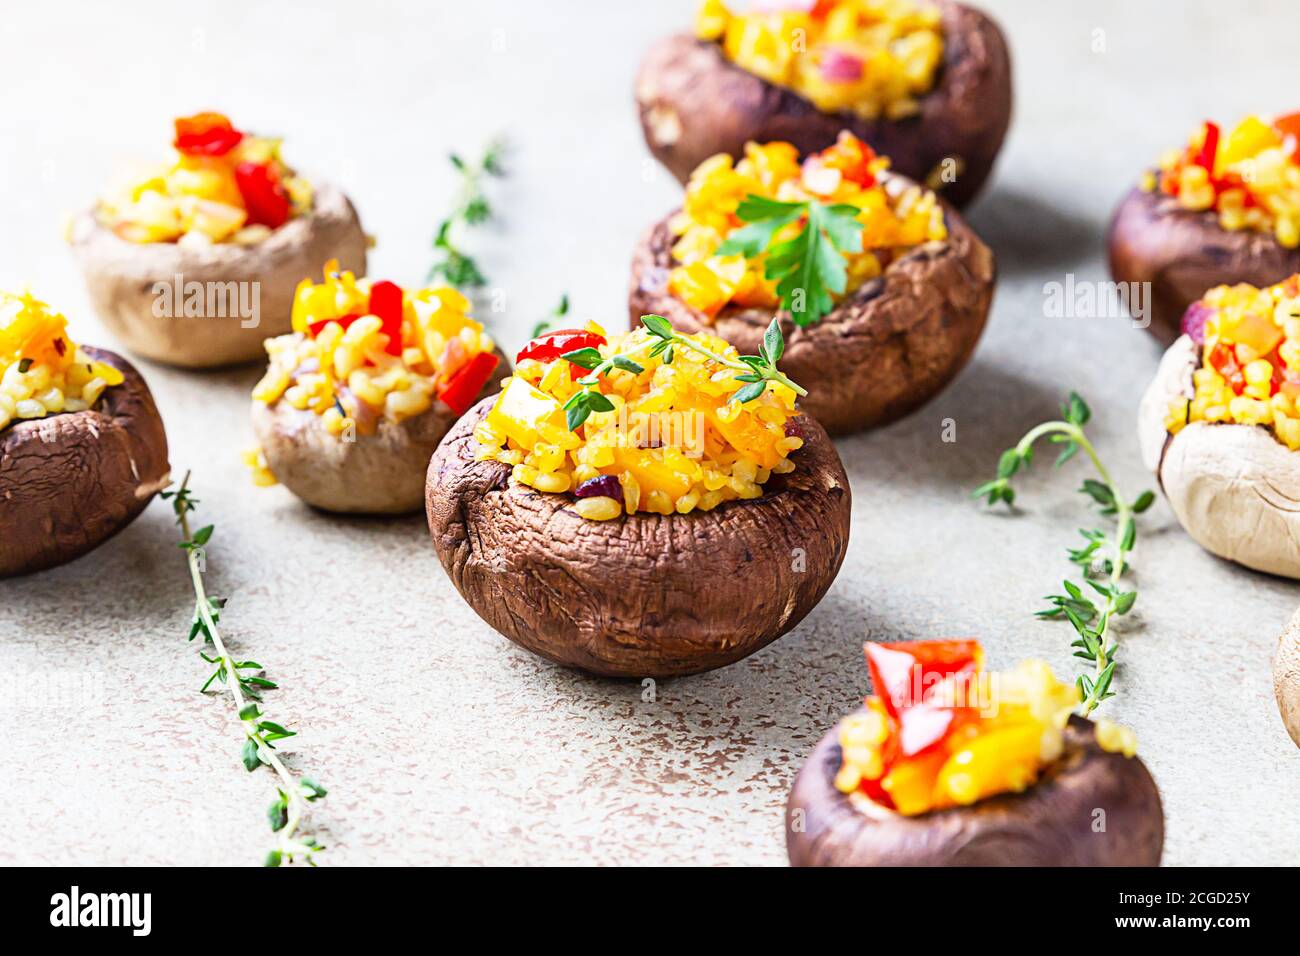 Gefüllte portobello-Pilze mit Bulgur, Gemüse und aromatischen Kräutern auf betontem Hintergrund. Vegetarisches Essen. Stockfoto